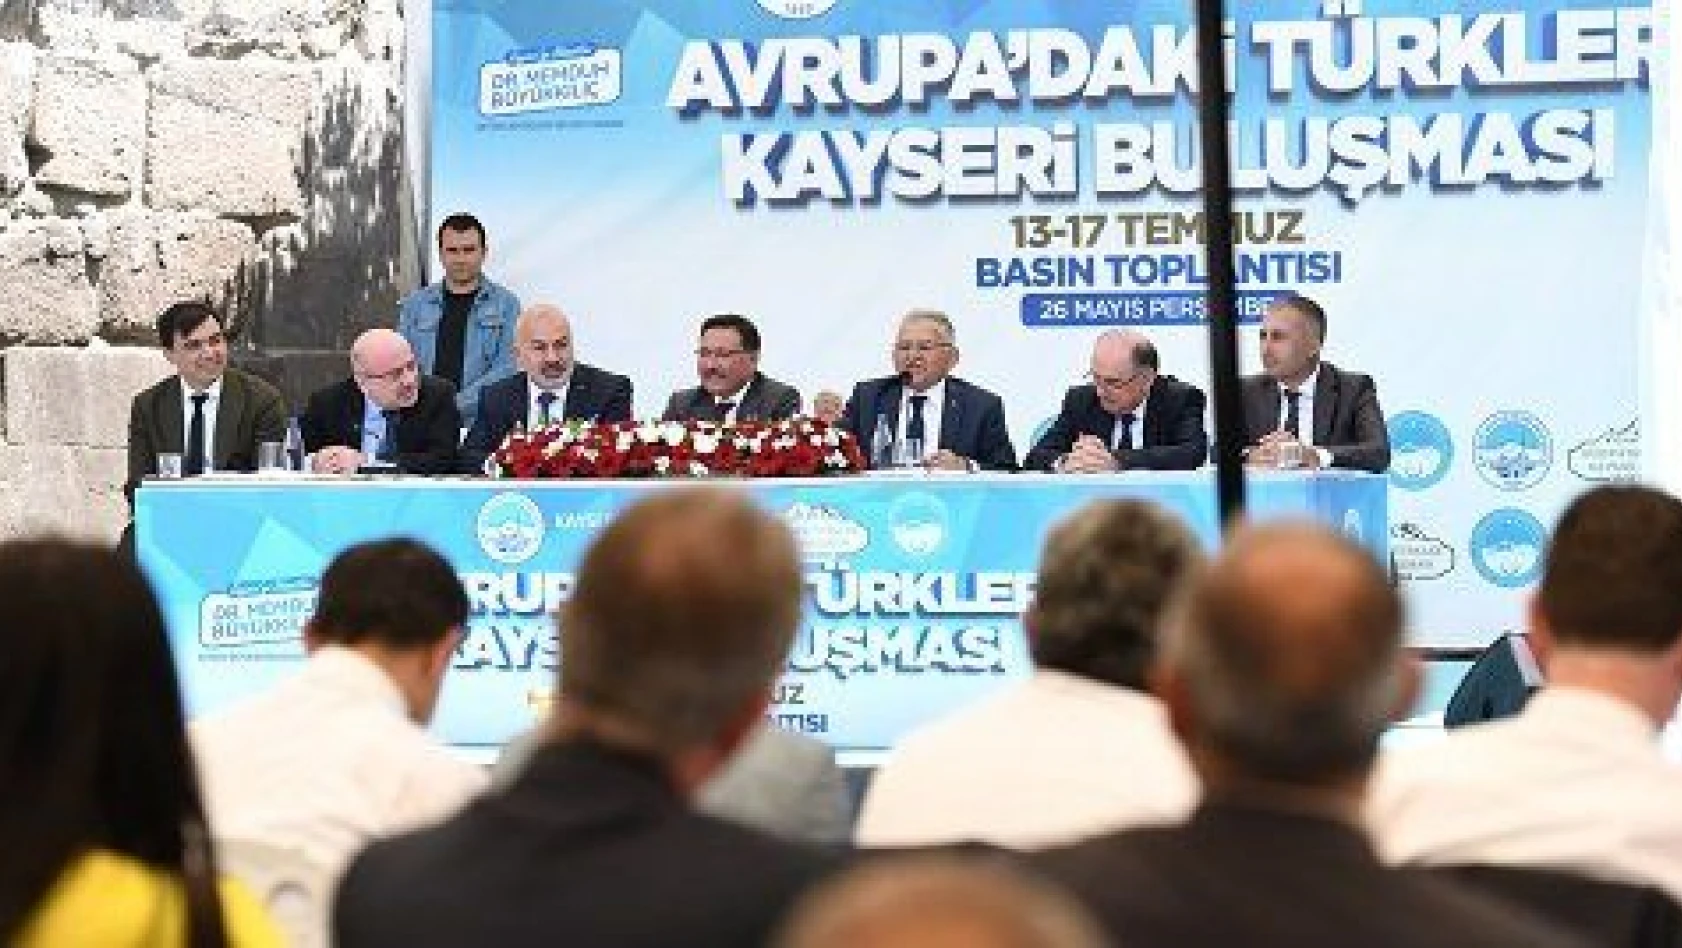 Avrupa'daki Türkler Kayseri'de buluşuyor